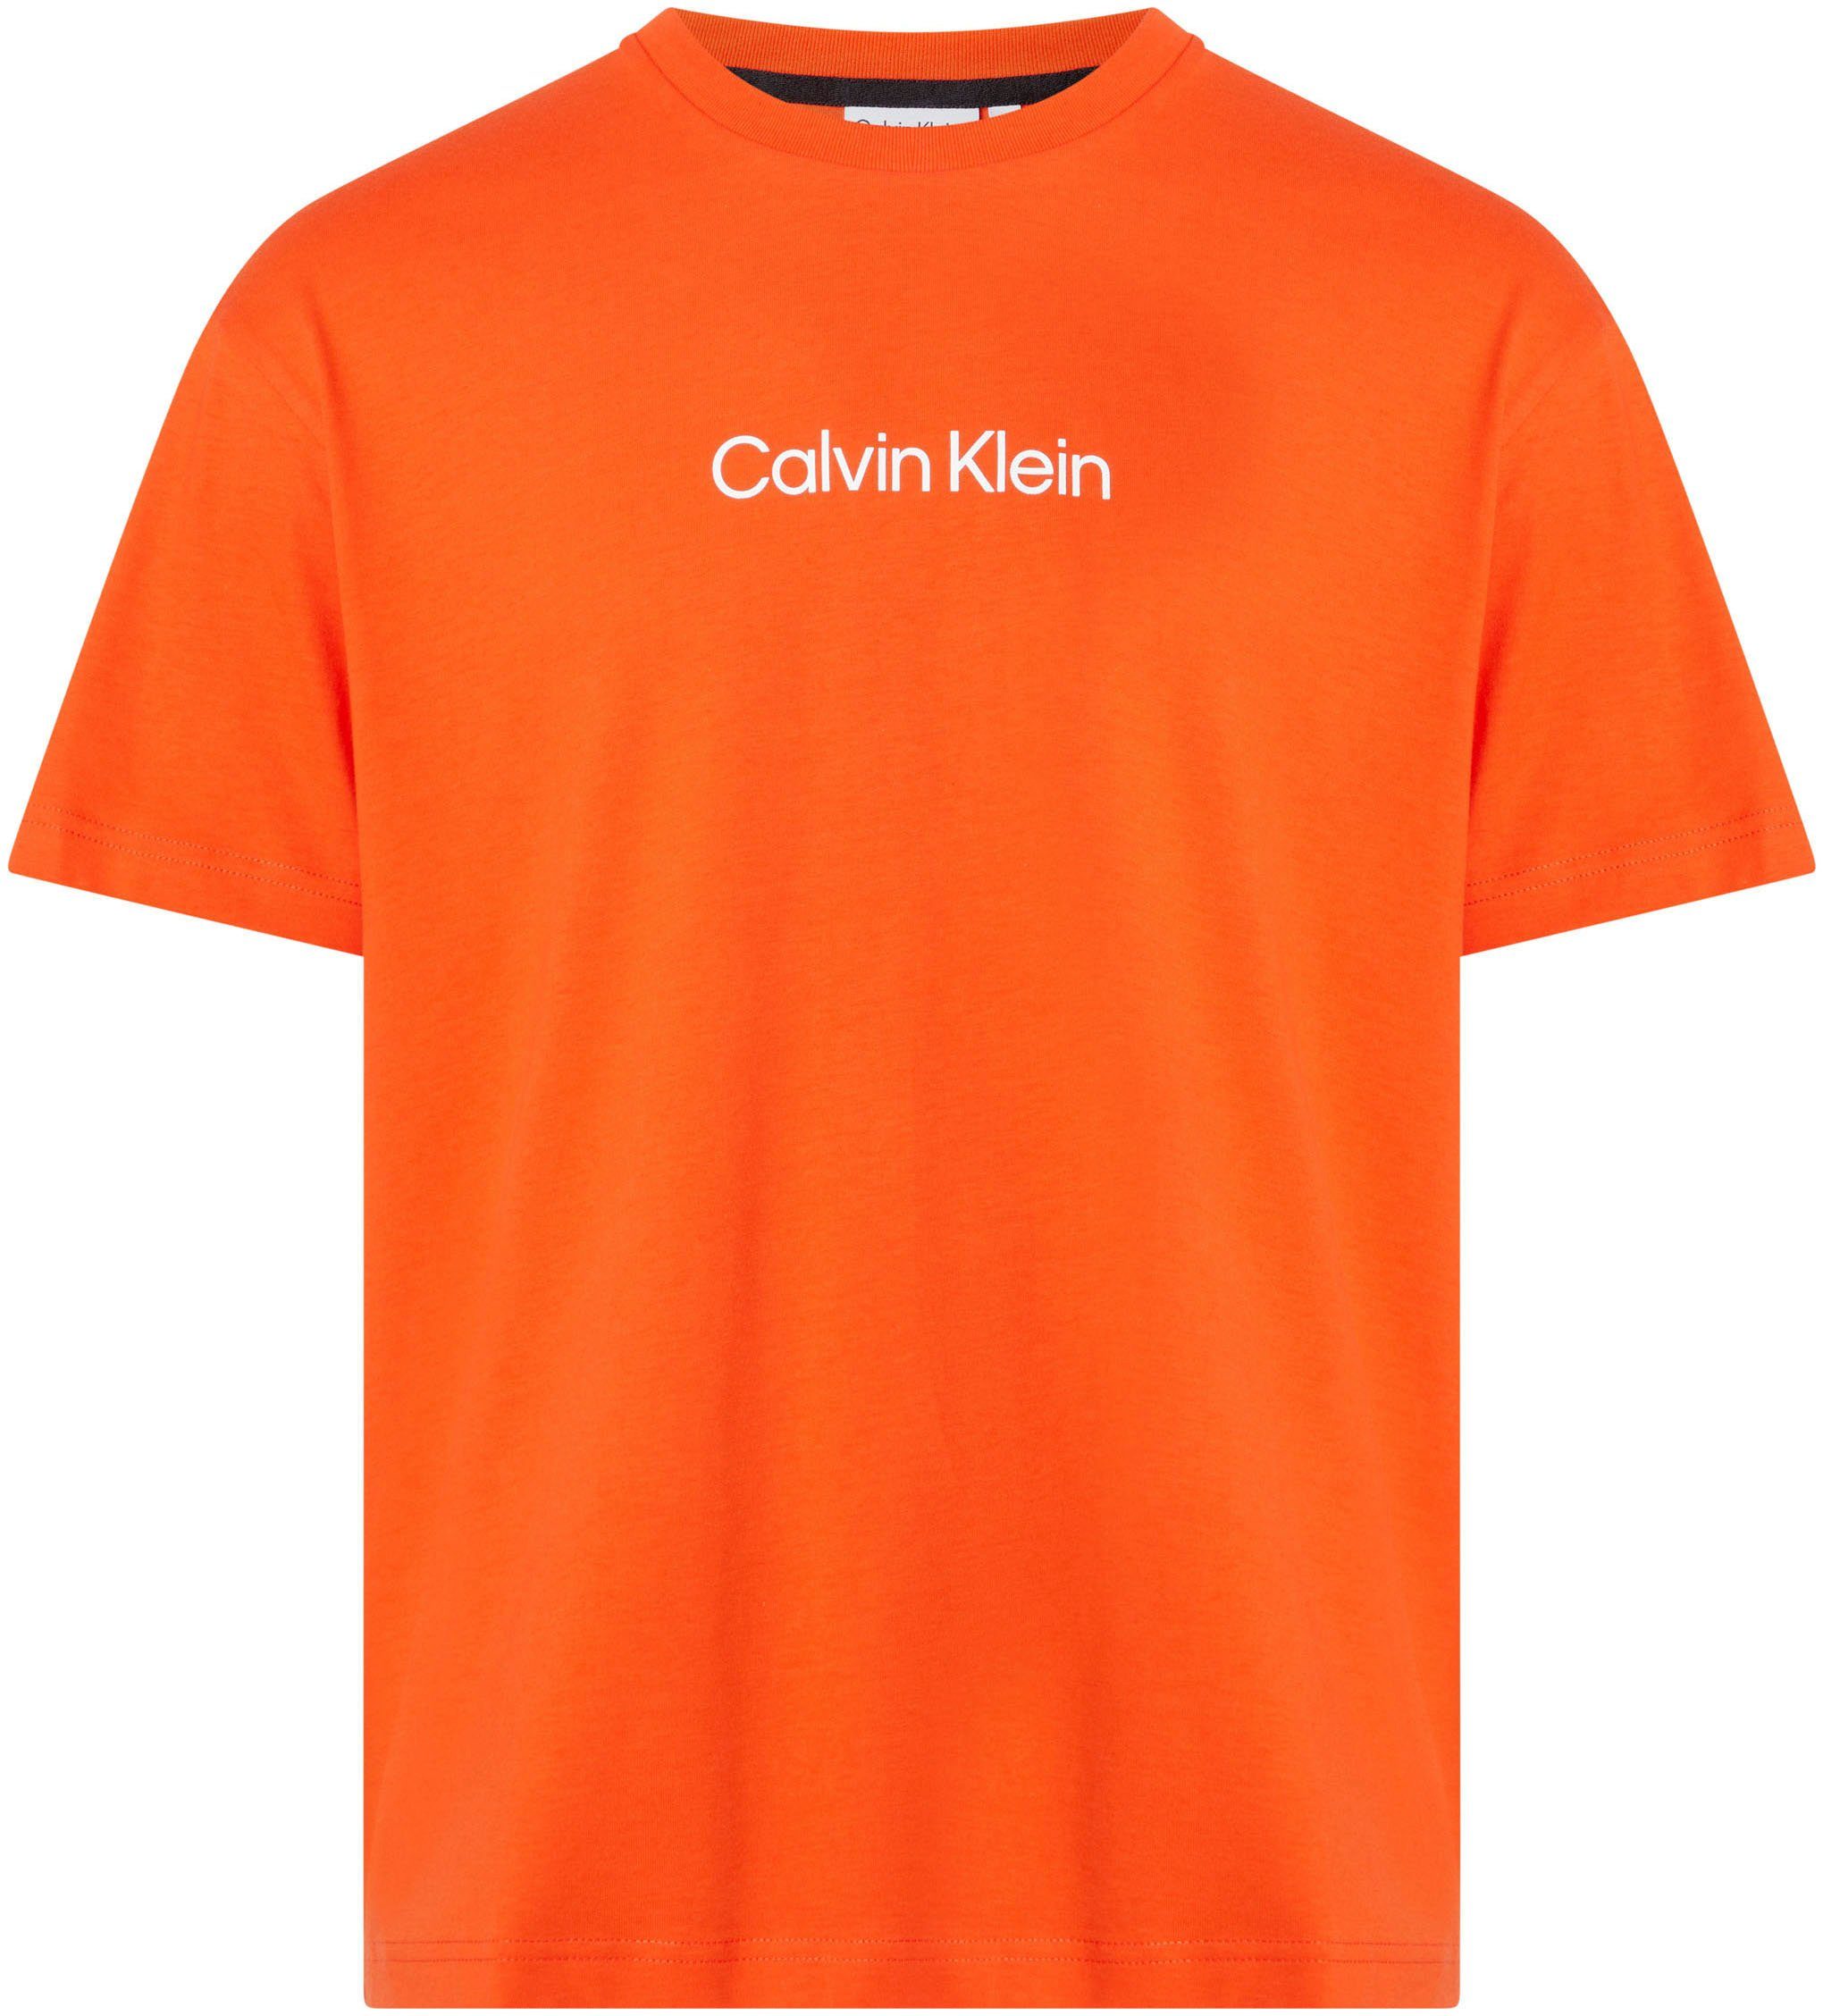 Calvin Klein T-Shirt COMFORT Markenlabel Spicy T-SHIRT Orange aufgedrucktem LOGO mit HERO